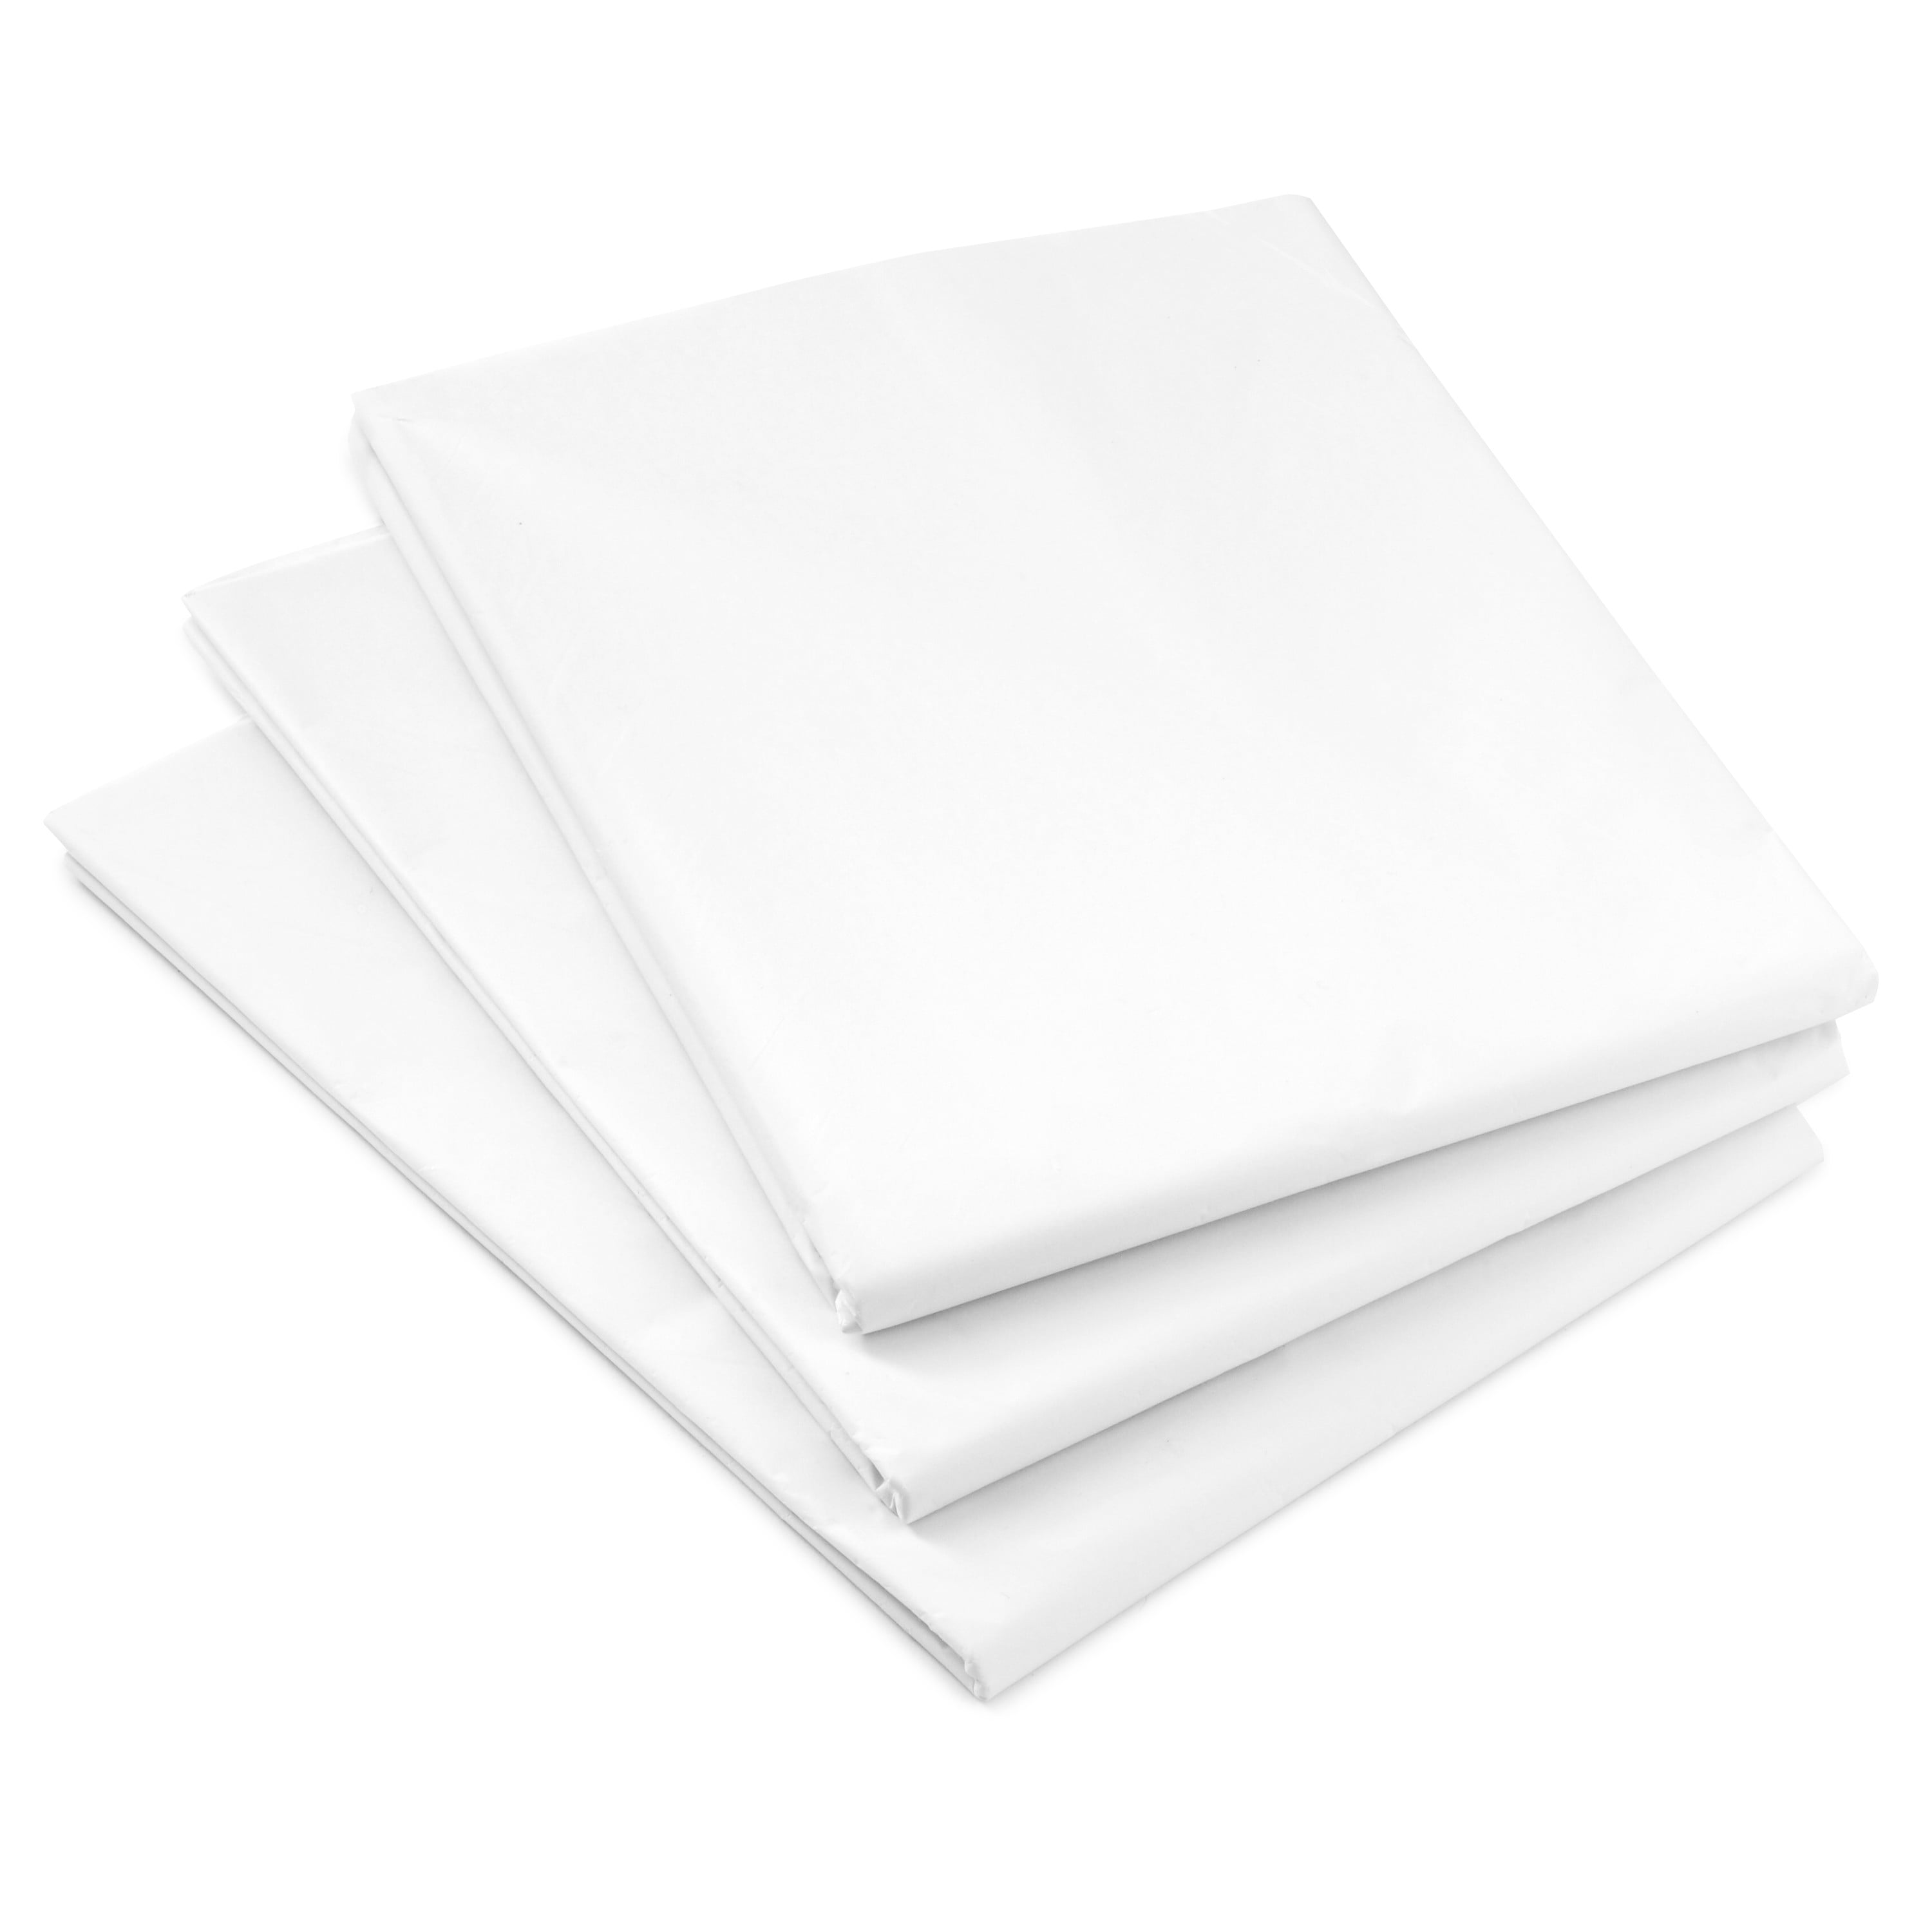 Hallmark White Tissue Paper (100 Sheets)